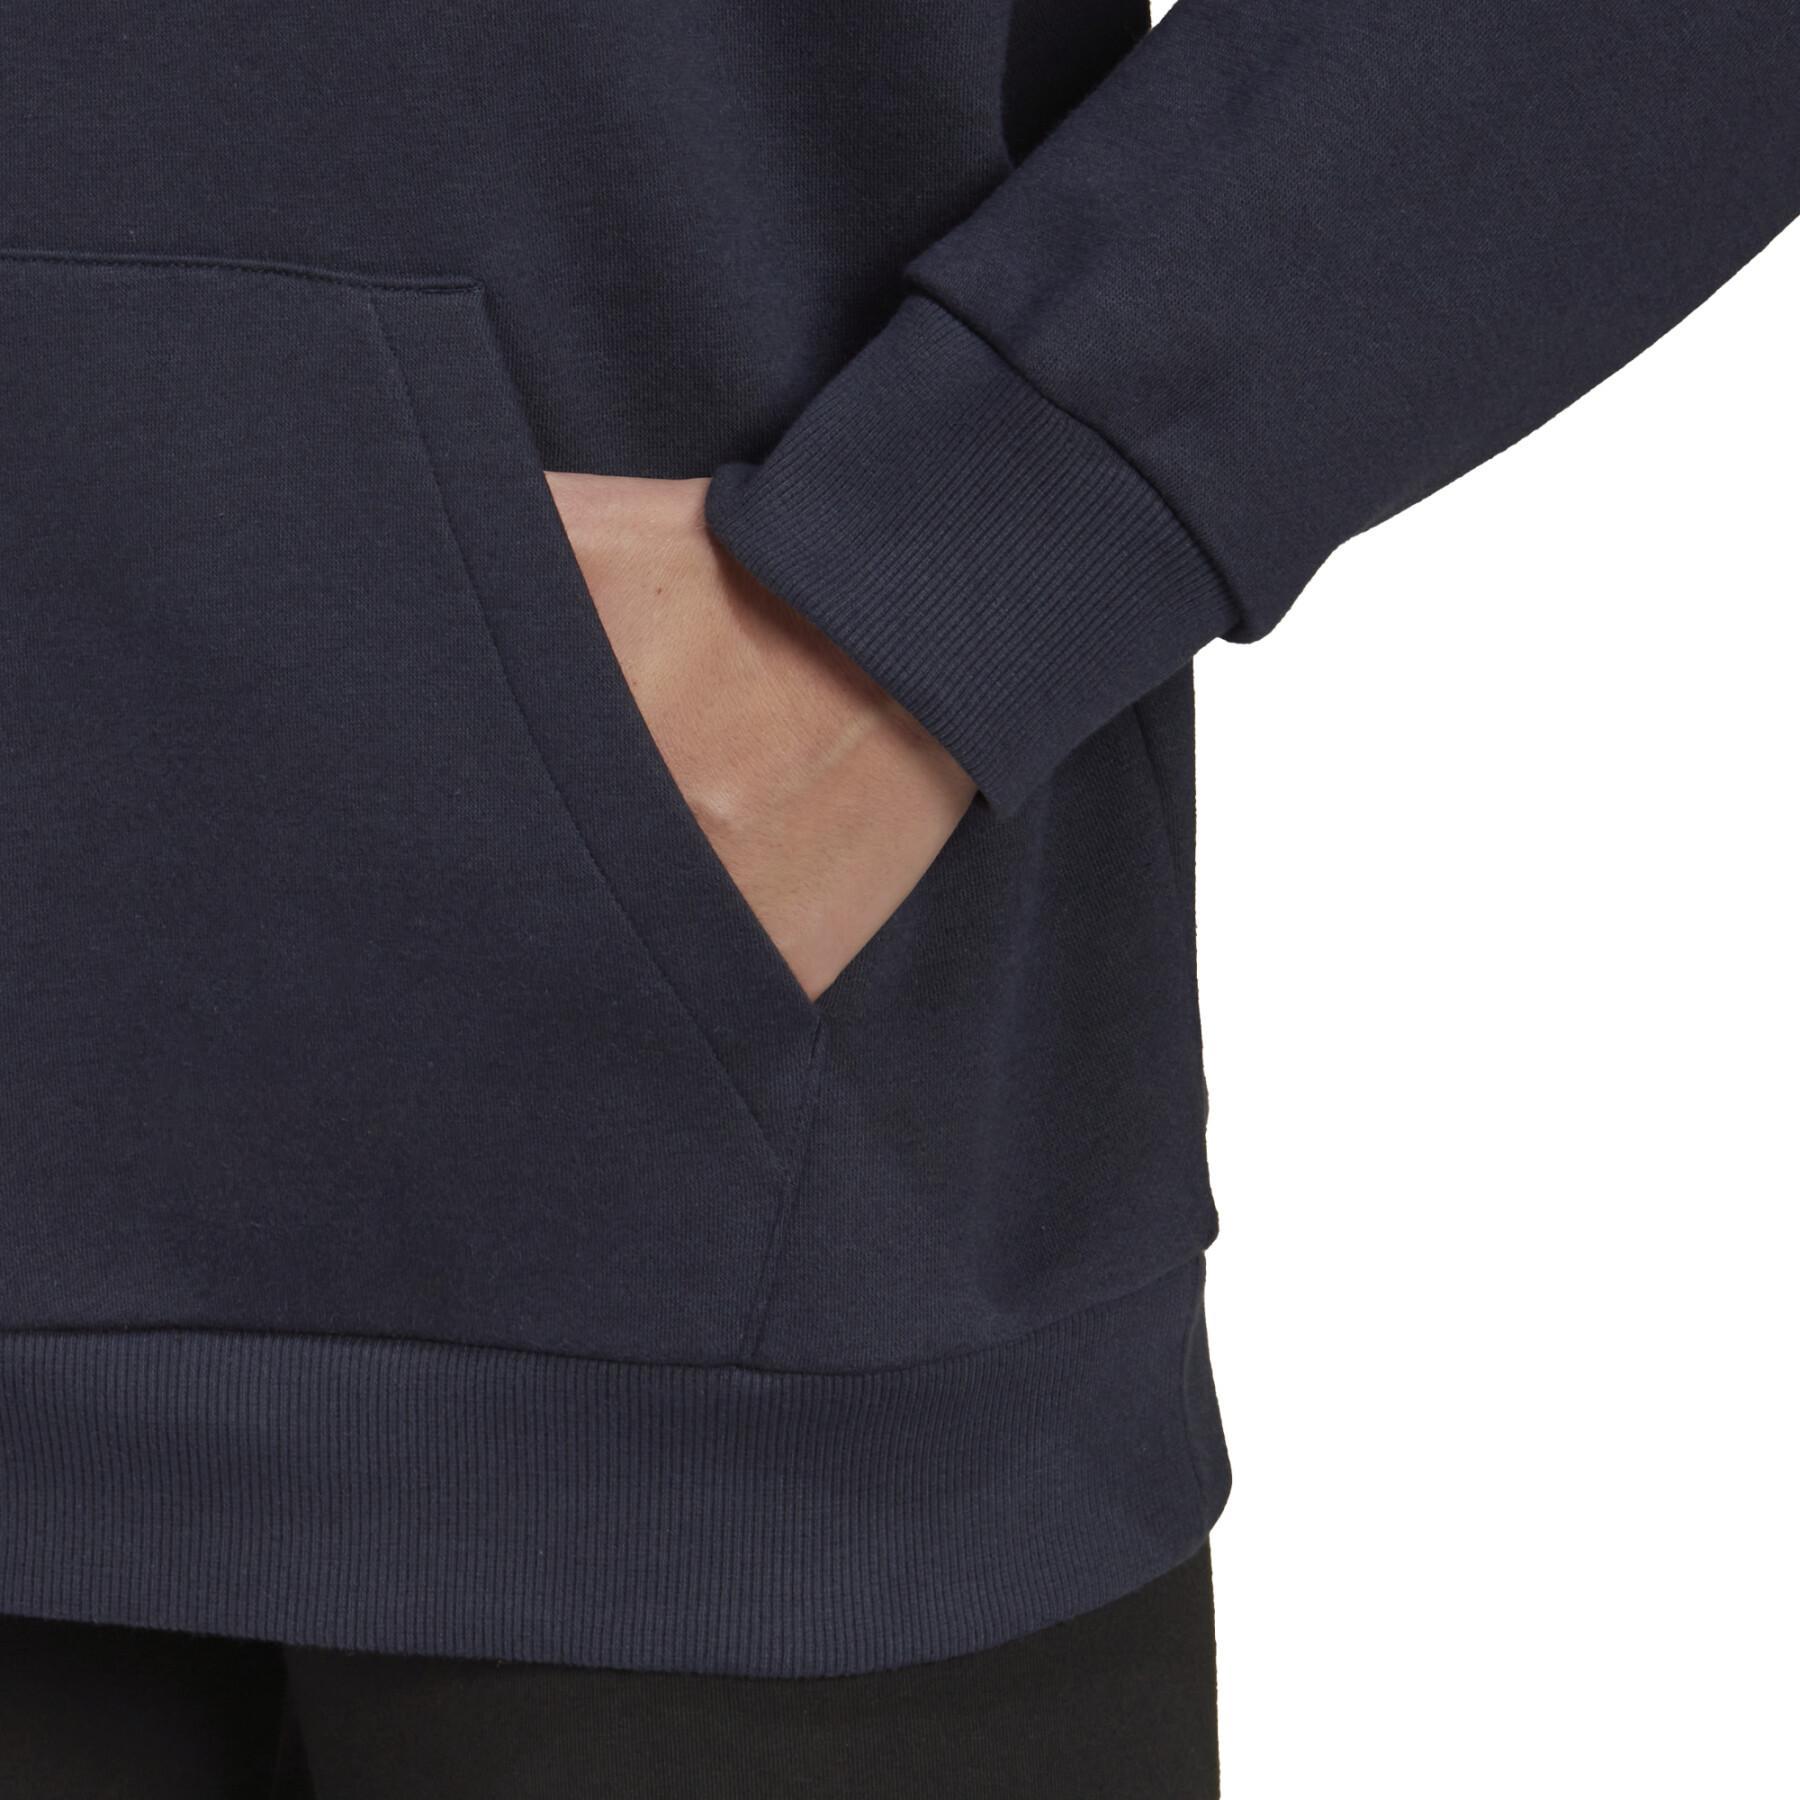 Sweatshirt Frau adidas Essentials Logo Boyfriend Fleece